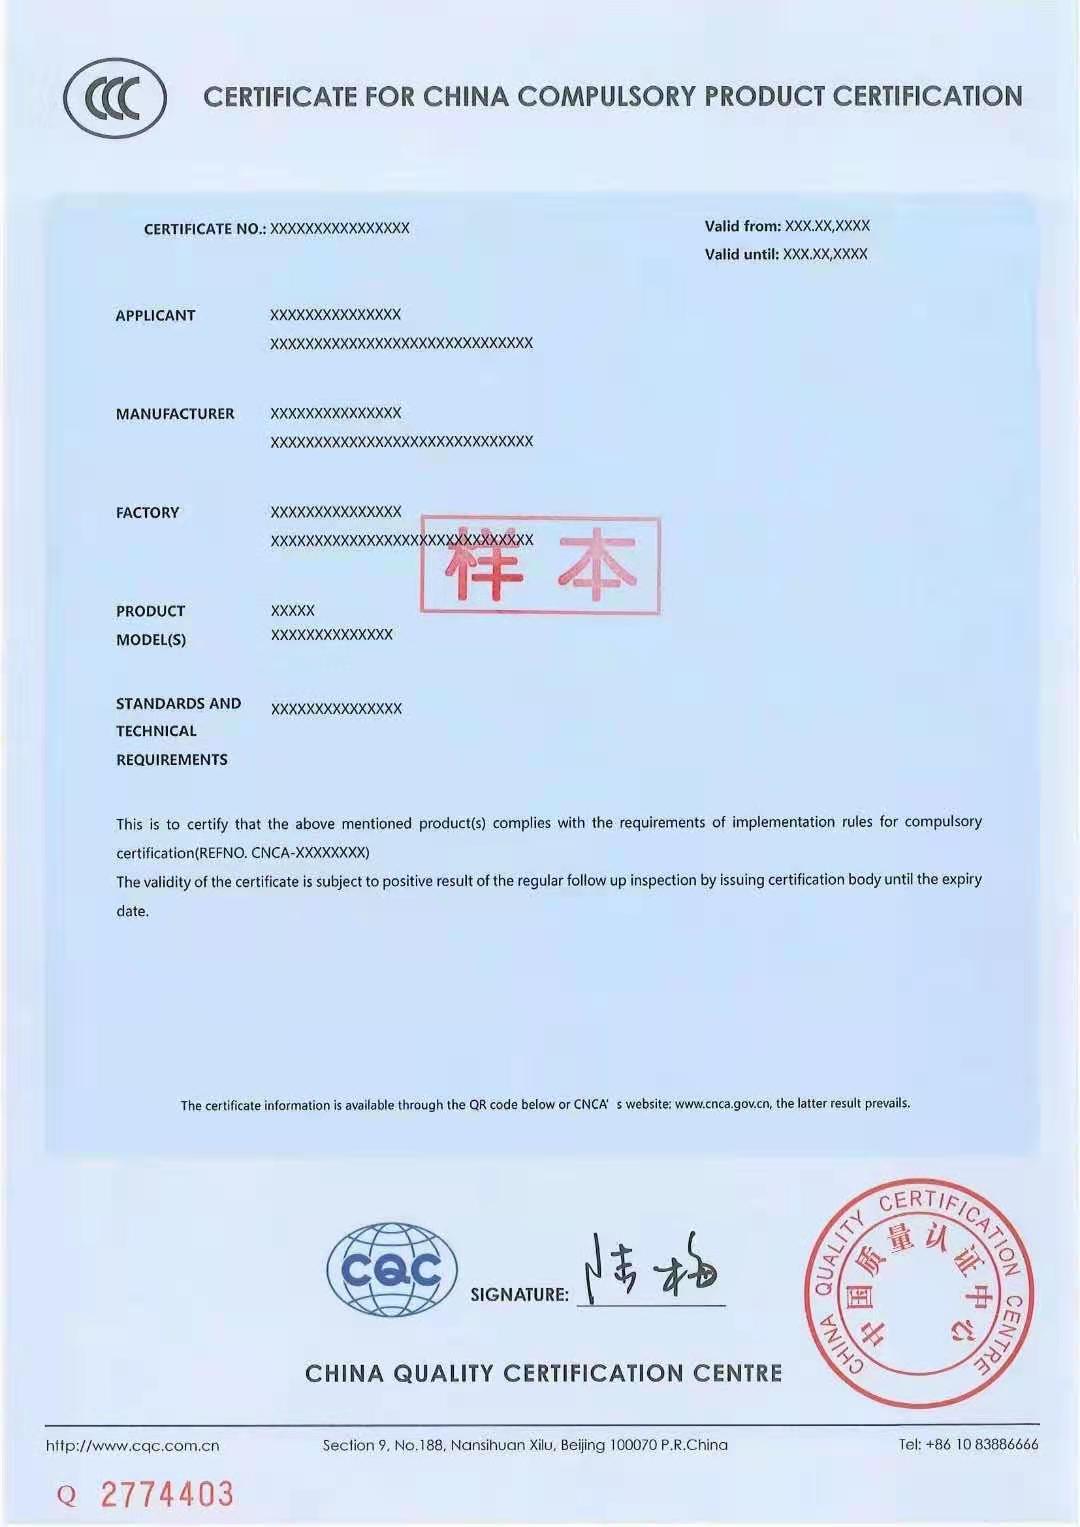 郑州电路开关3C认证 冰箱CCC认证 怎么申请